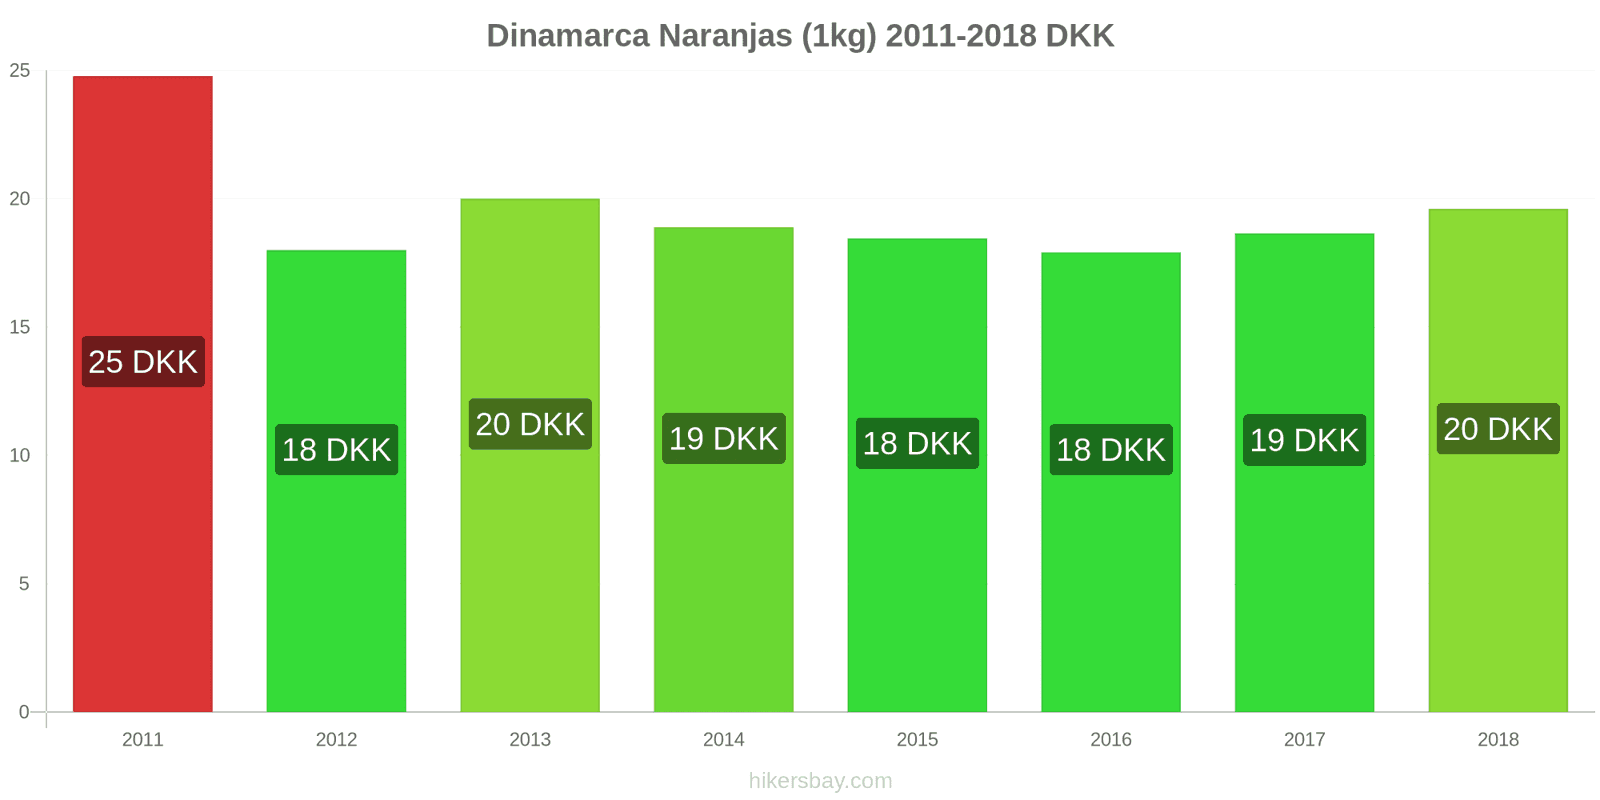 Dinamarca cambios de precios Naranjas (1kg) hikersbay.com